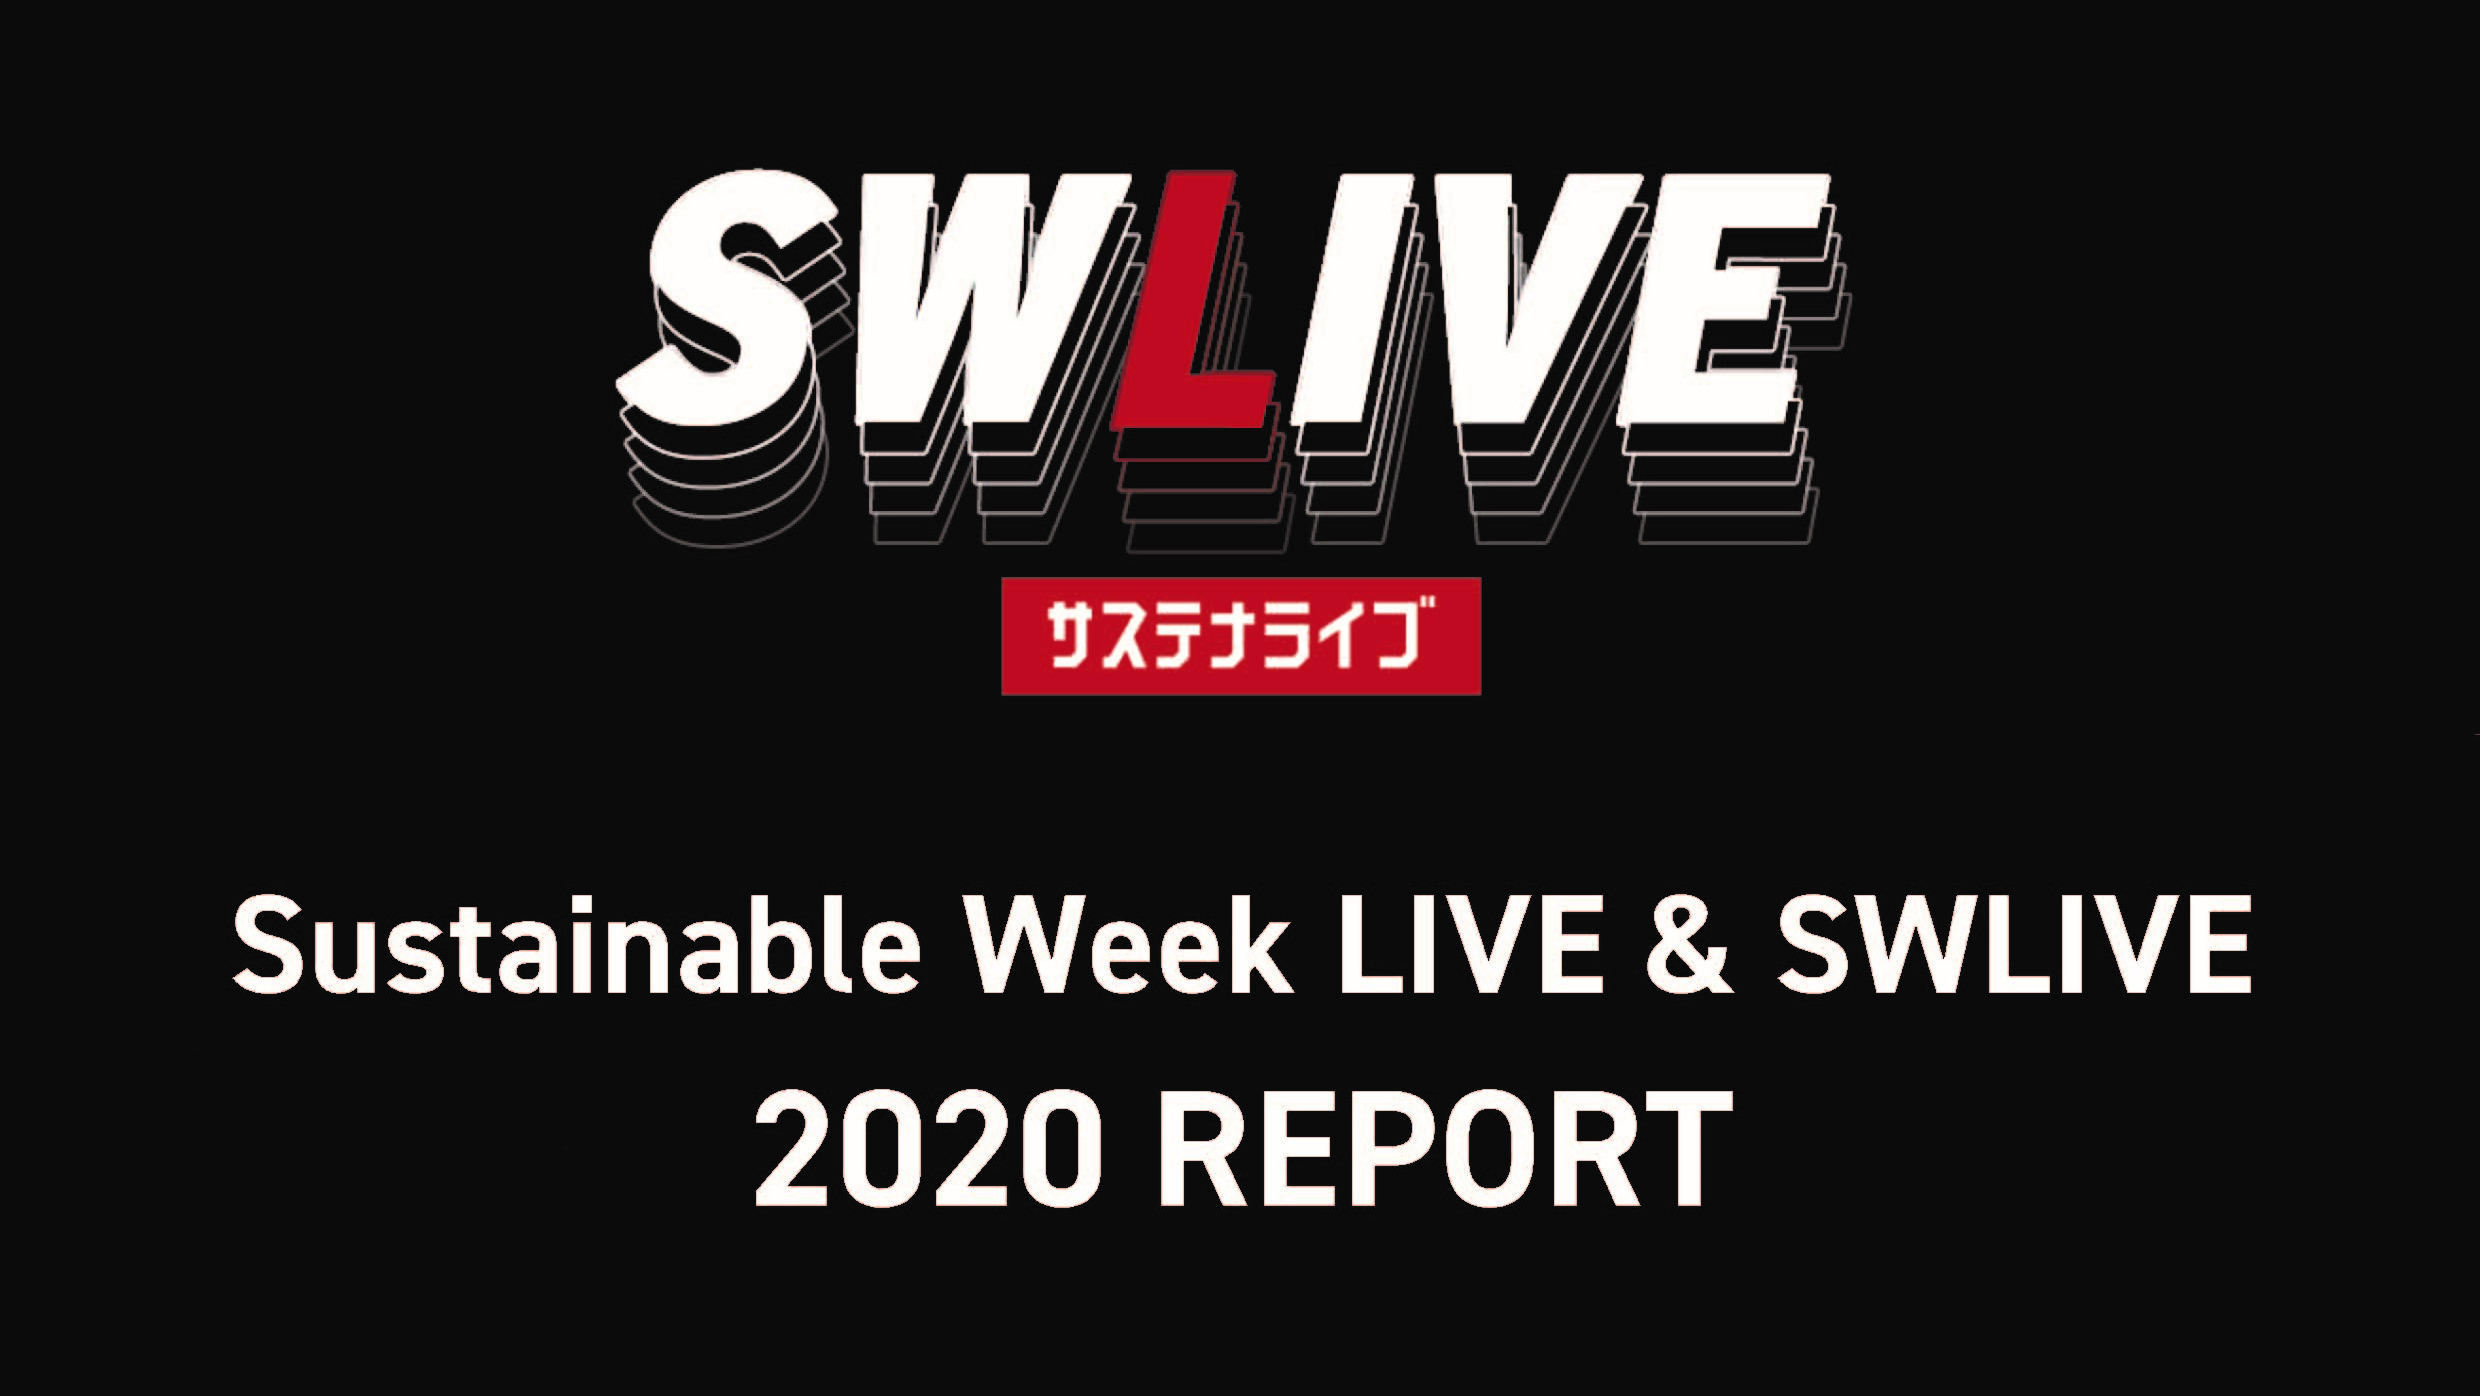 【お知らせ】Sustainable Week LIVE & SWLIVE 報告書を作成しました。